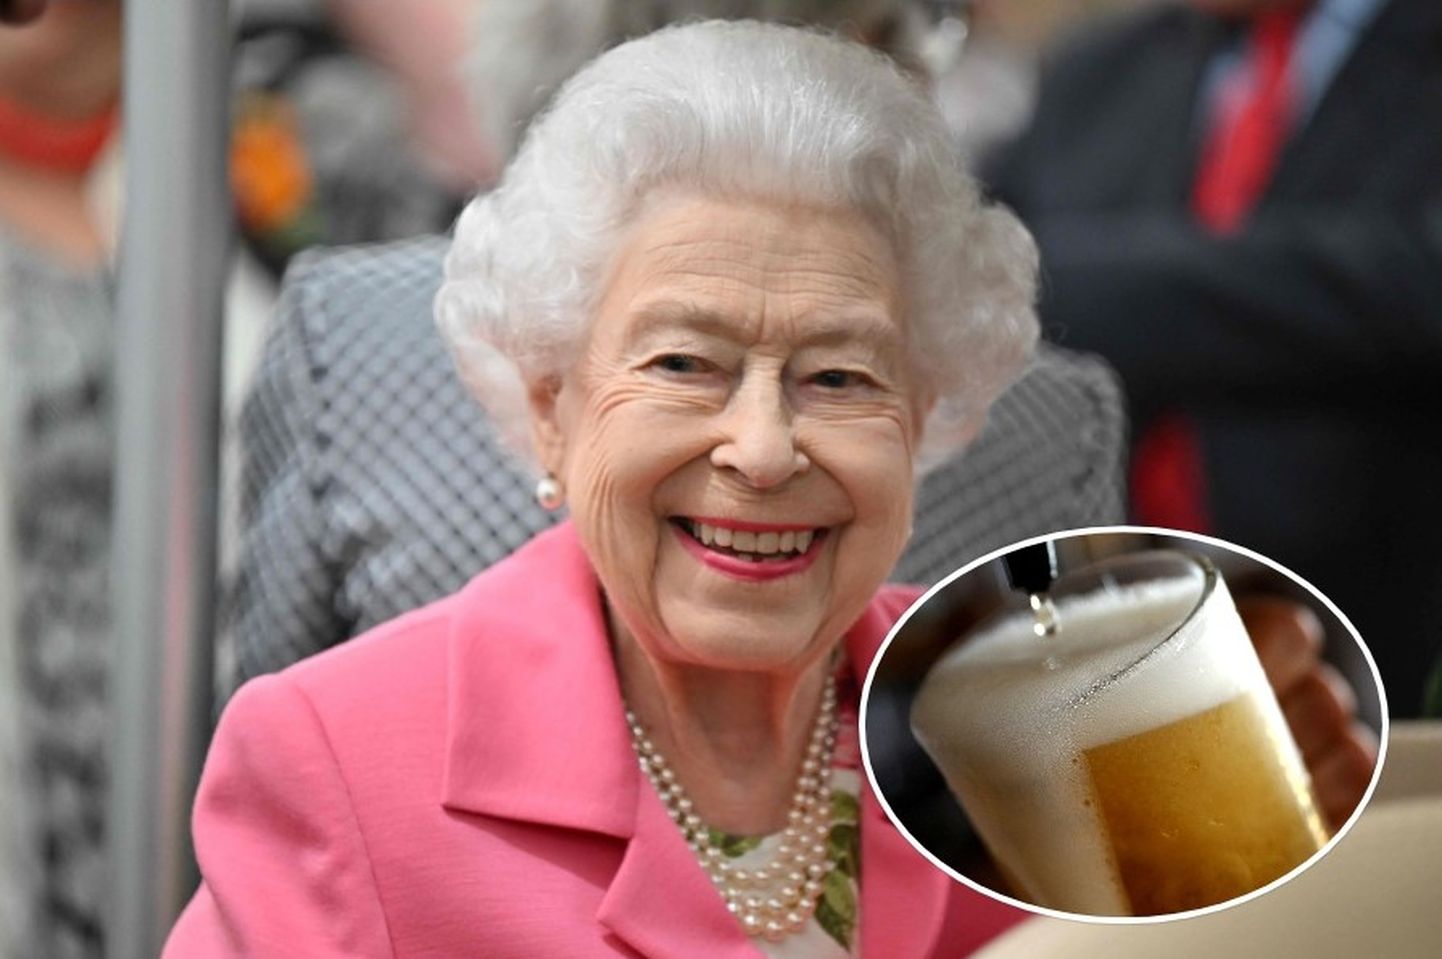 Briti pubikett müüb kuninganna kroonijuubeli puhul õlut üliodava hinnaga.